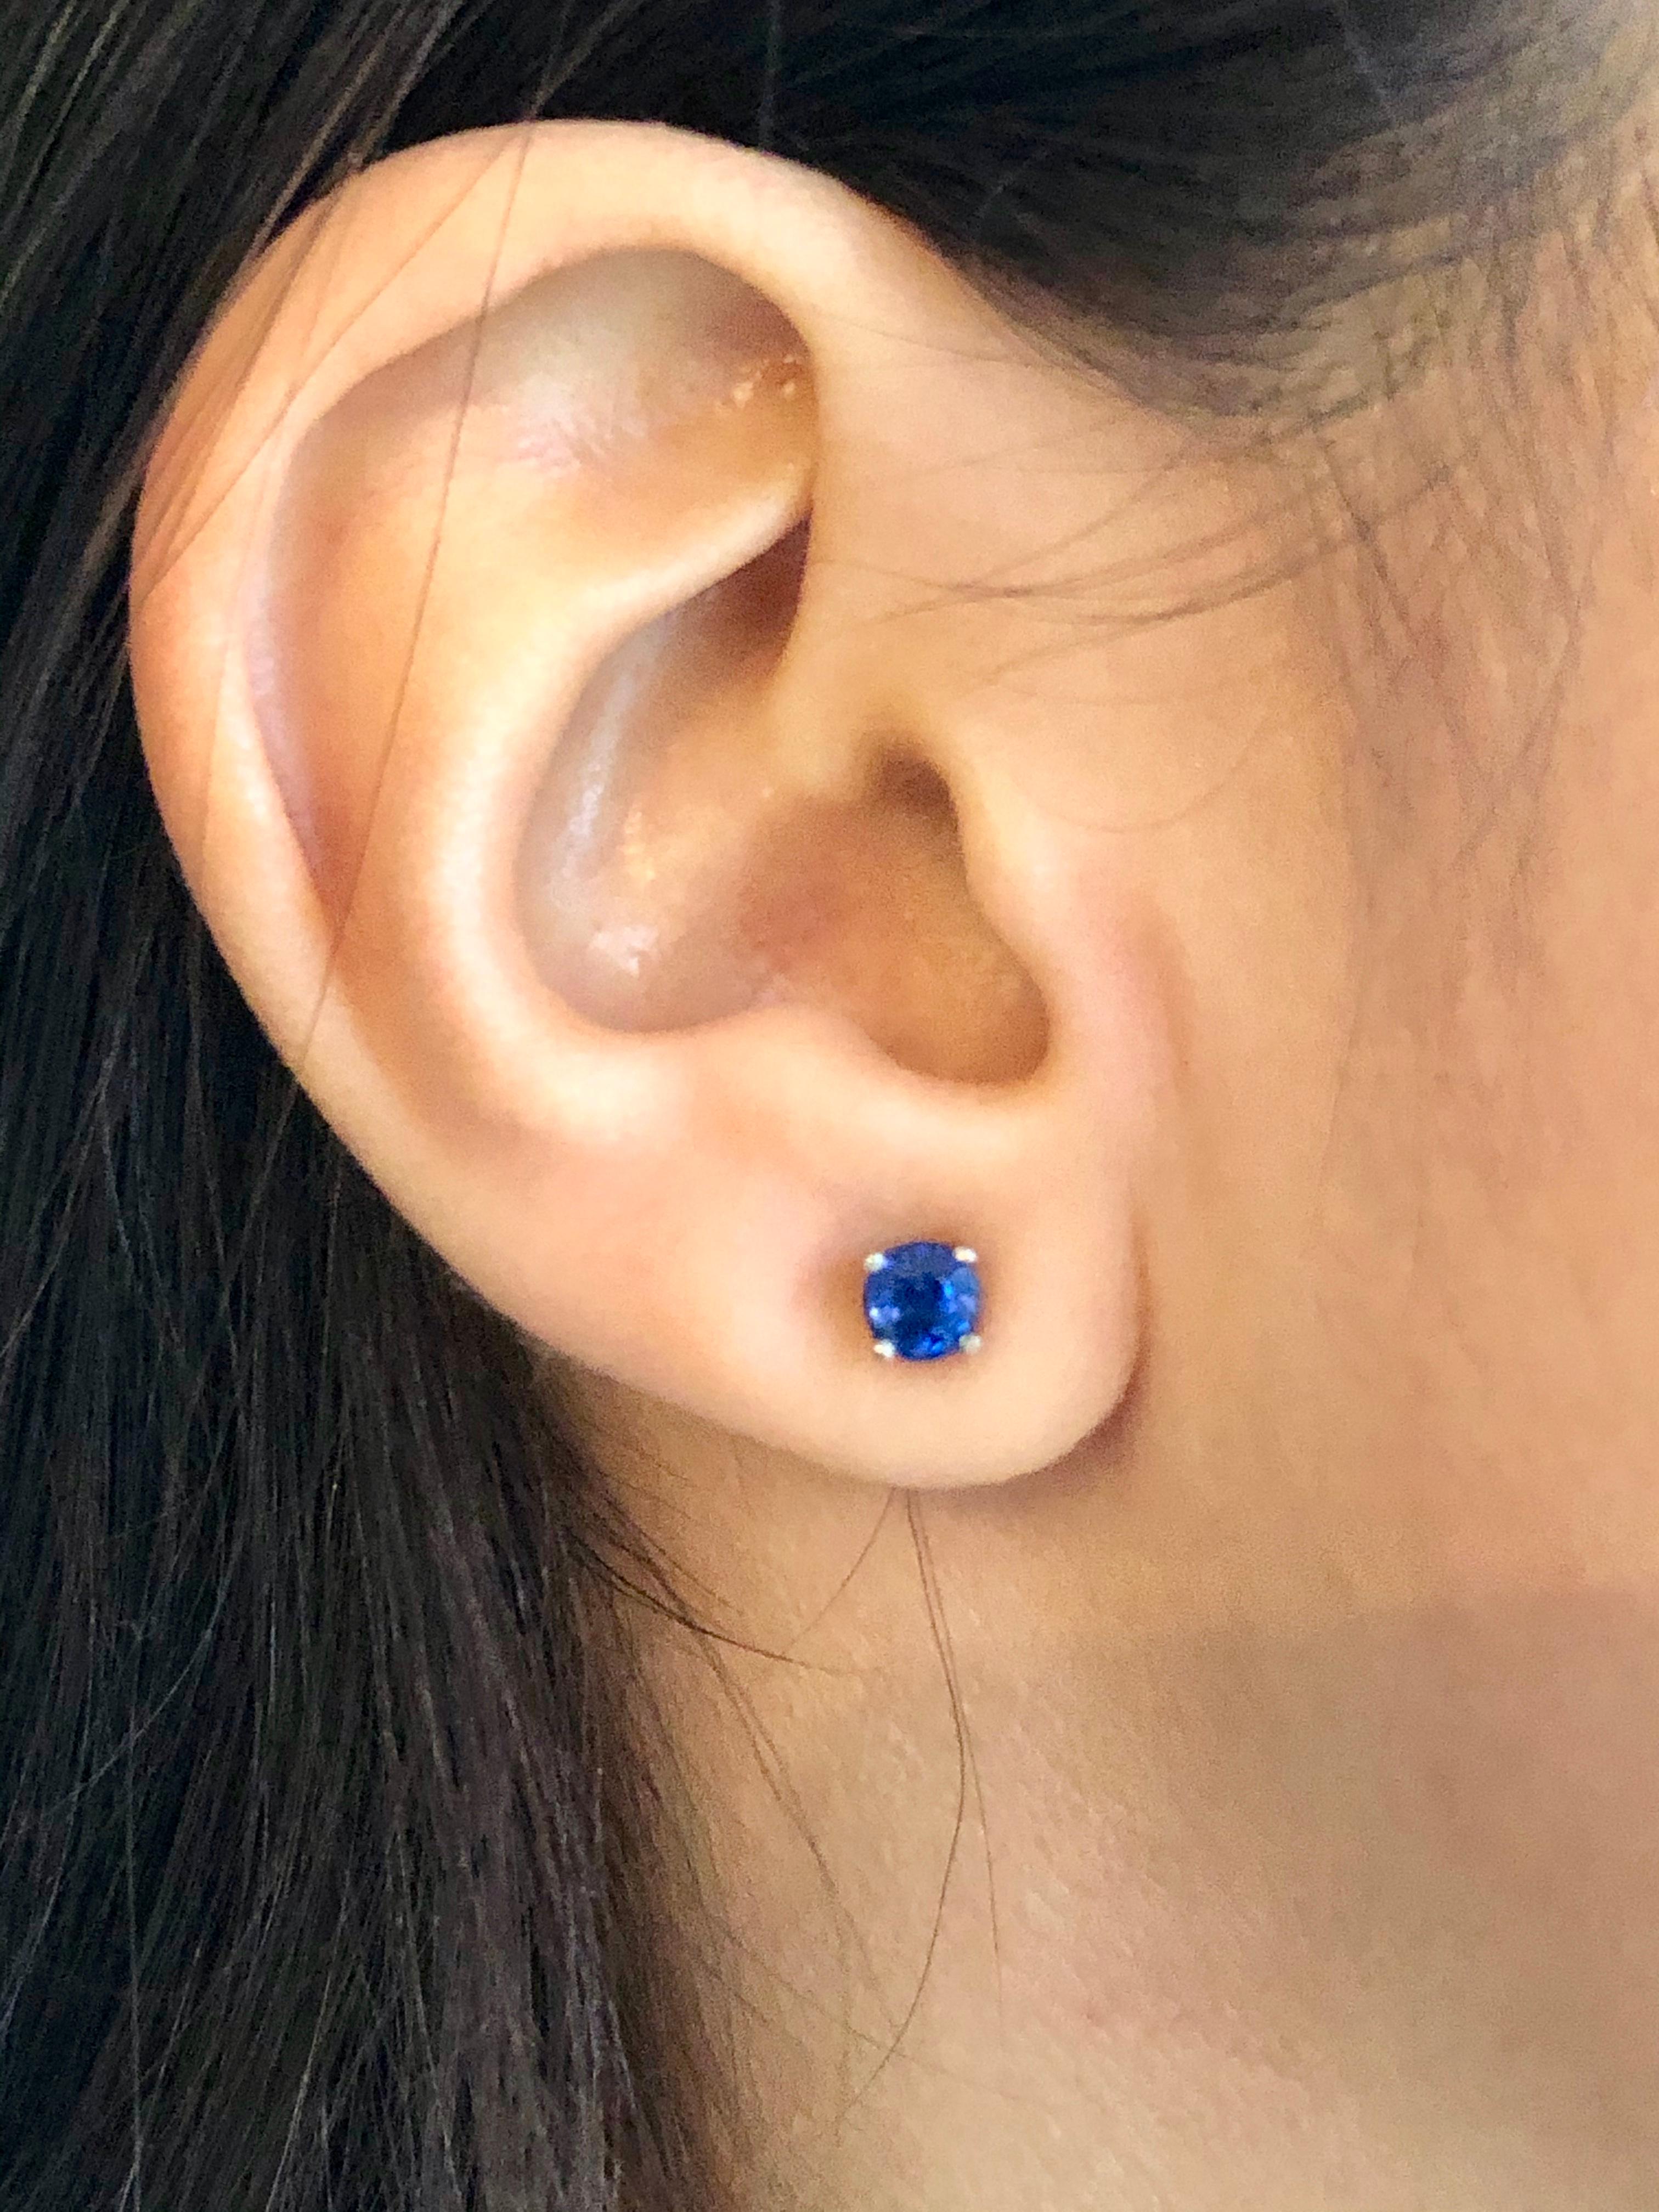 Blue Sapphire Platinum Stud Earrings
Platinum stud earrings set with two round blue sapphires weighing 1.15 carat
Dimensions: Approx. 5mm
Estate/Excellent condition.